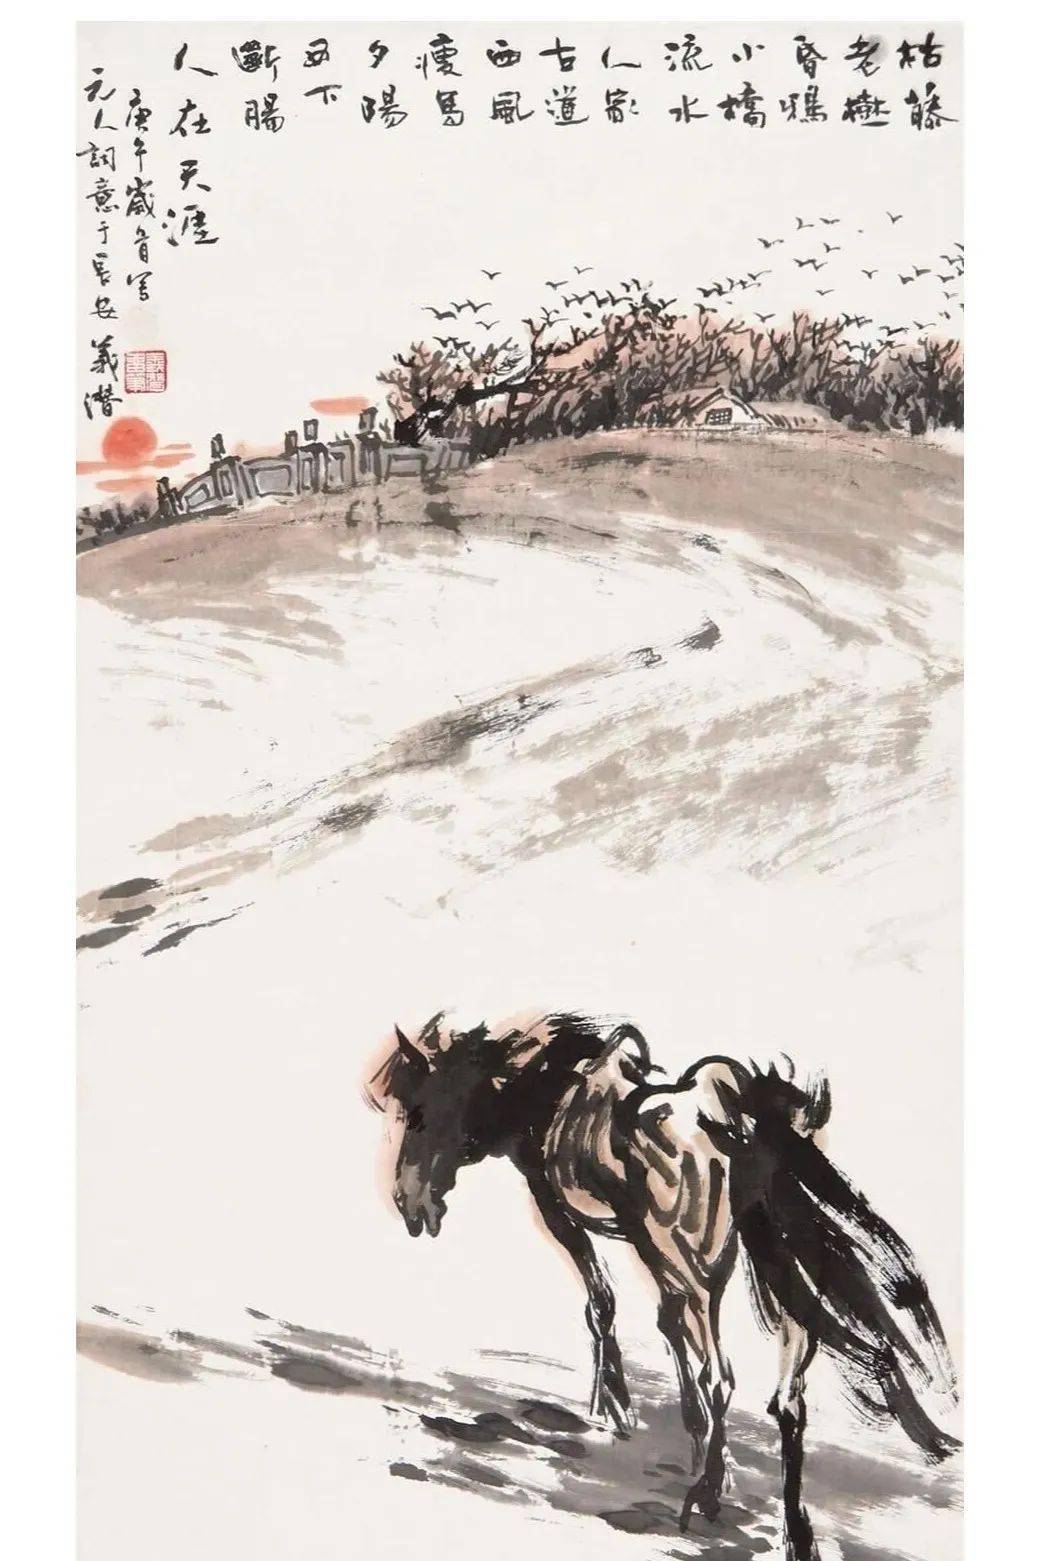 西风萧瑟,寒鸦点点,在羊肠小道上,骑着一匹瘦马的马致远,在一片荒凉的